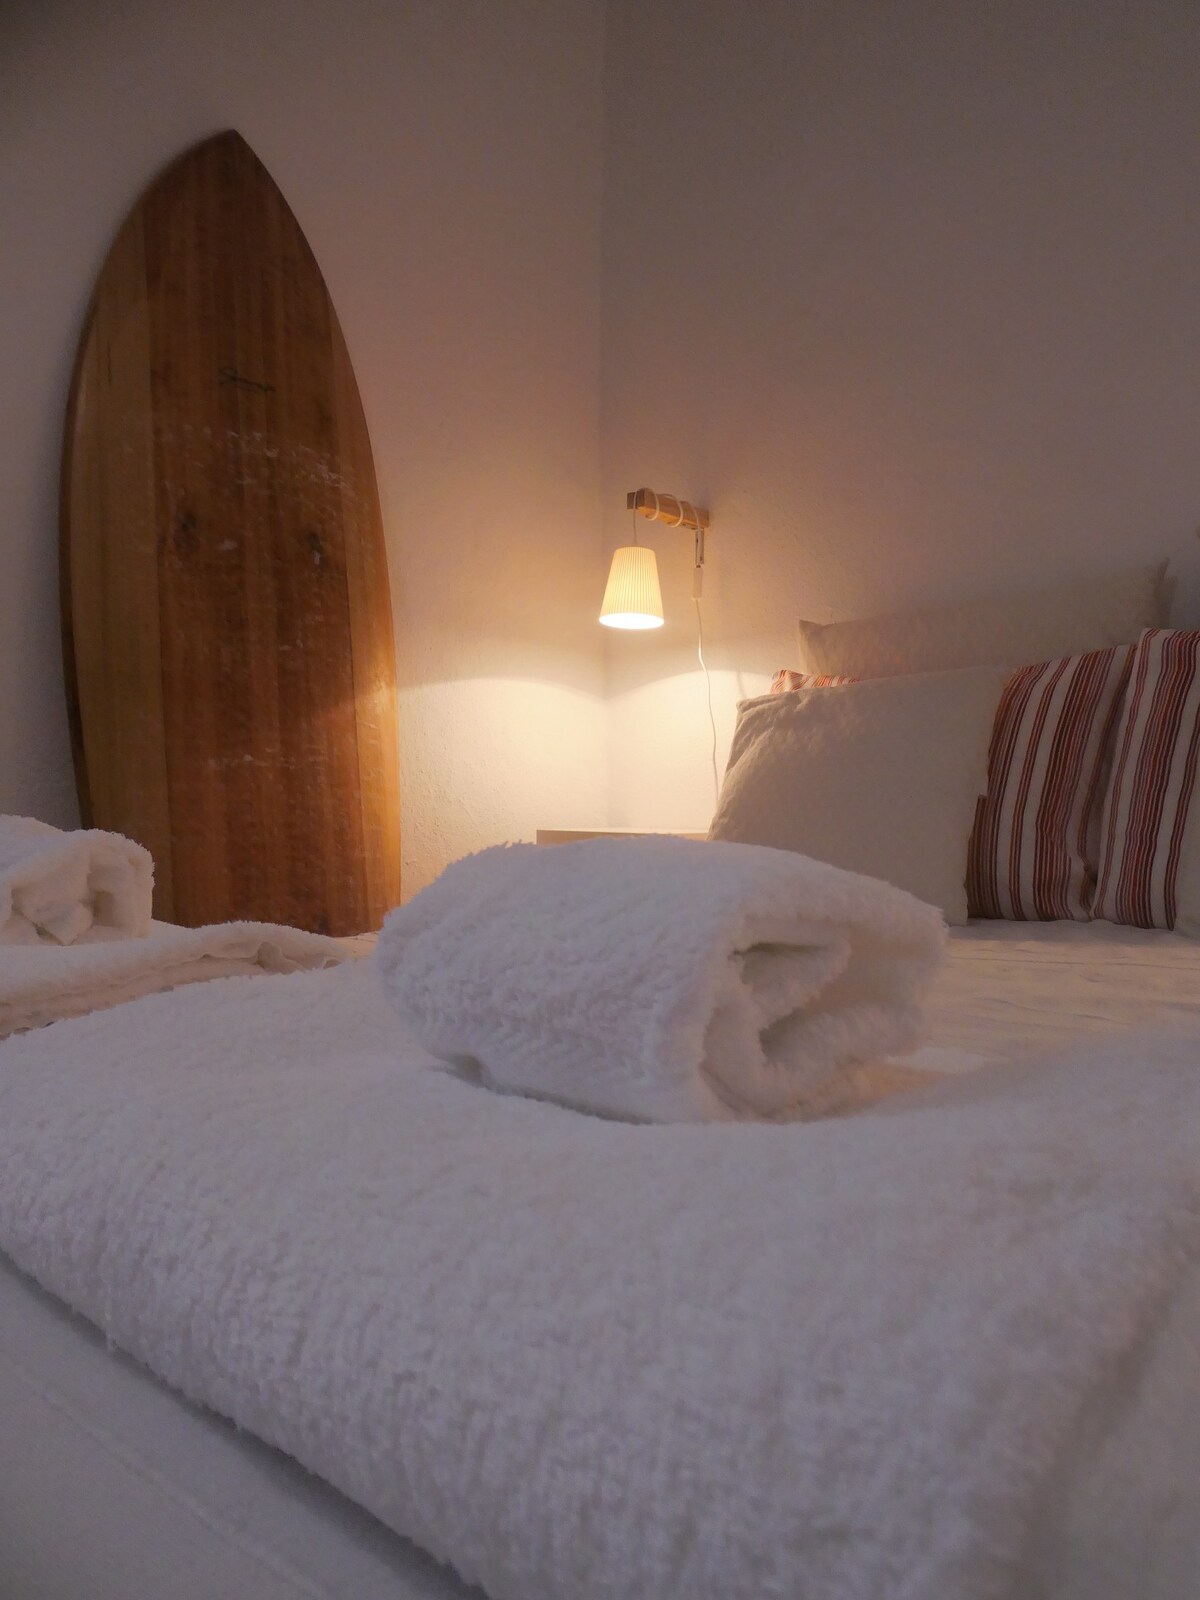 Basalto 's Room: Mistérios Surf Shack